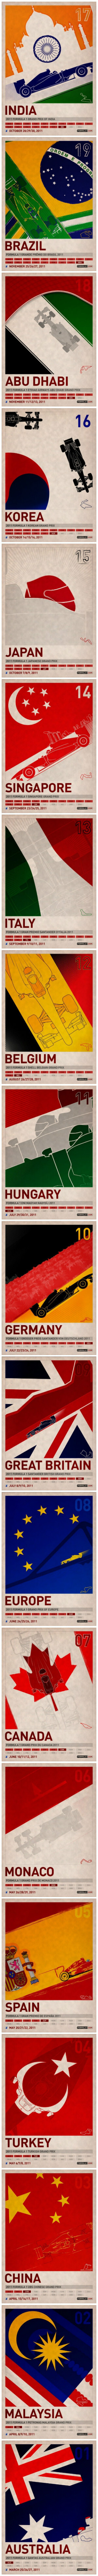 F1赛事海报.jpg